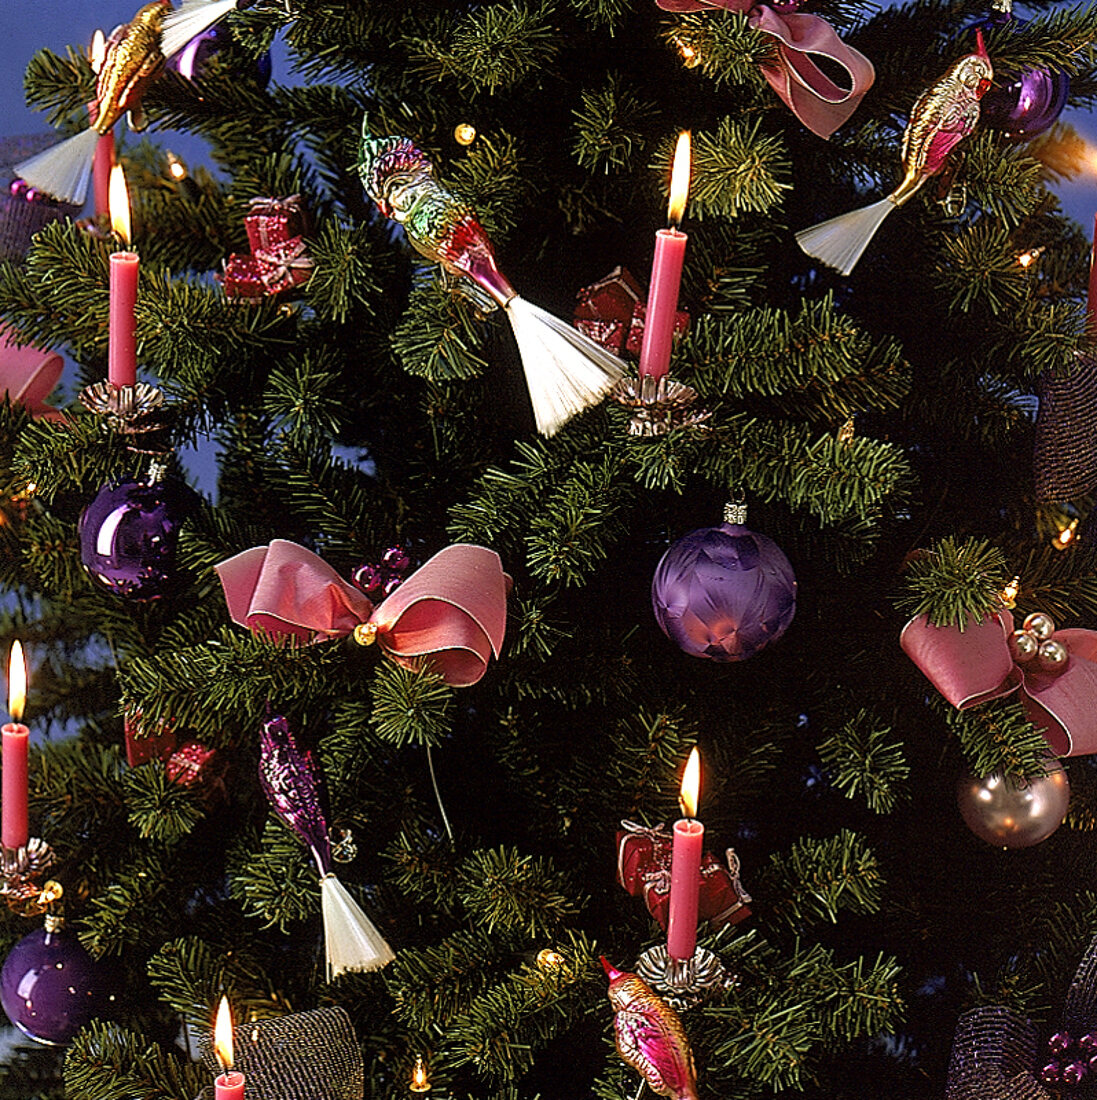 Detailaufnahme vom Weihnachtsbaum: rosa Kerzen u. Schleifen, Glasvögel